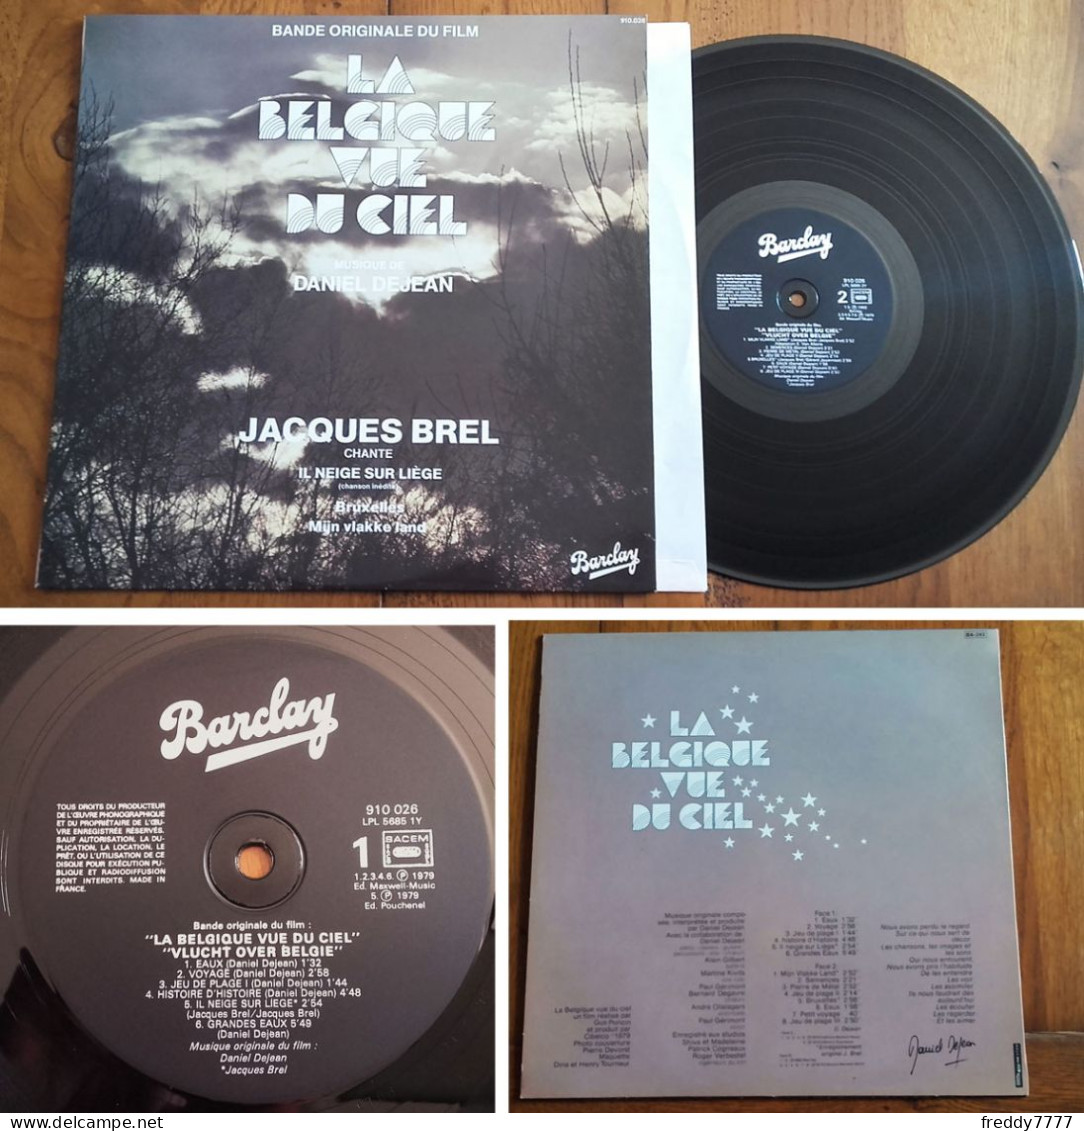 RARE French LP 33t RPM (12") BOF OST «LA BELGIQUE VUE DU CIEL» (Jacques Brel, 1980) - Filmmuziek